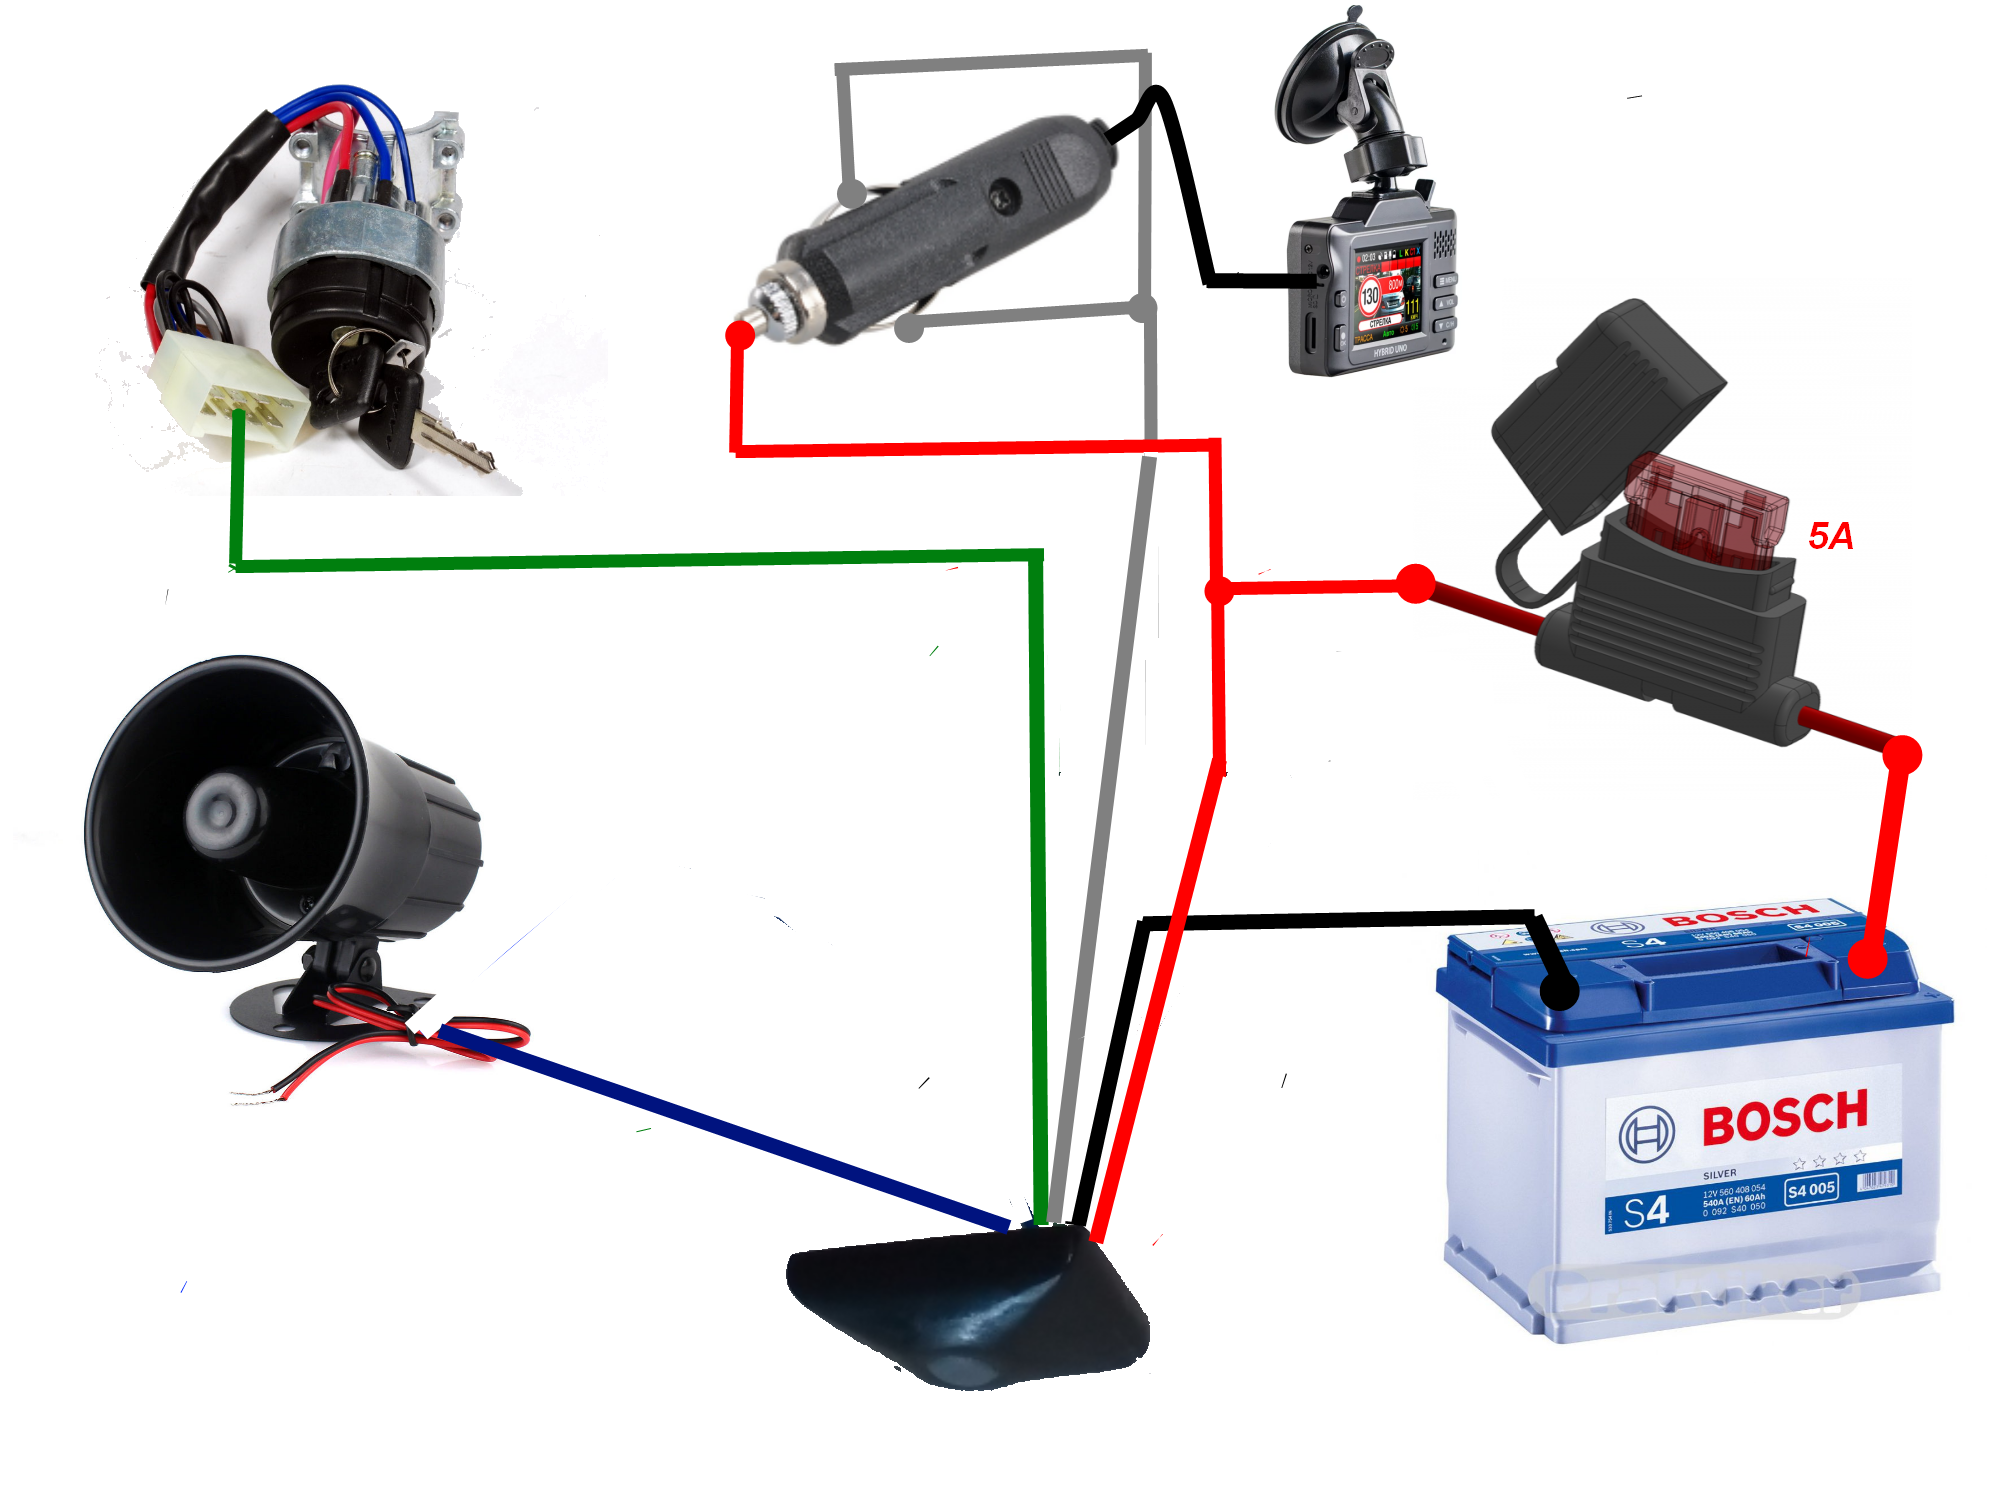 Подключить видеорегистратор в автомобиле: Как спрятать провода от видеорегистратора в машине "АВТО-ДРОН"